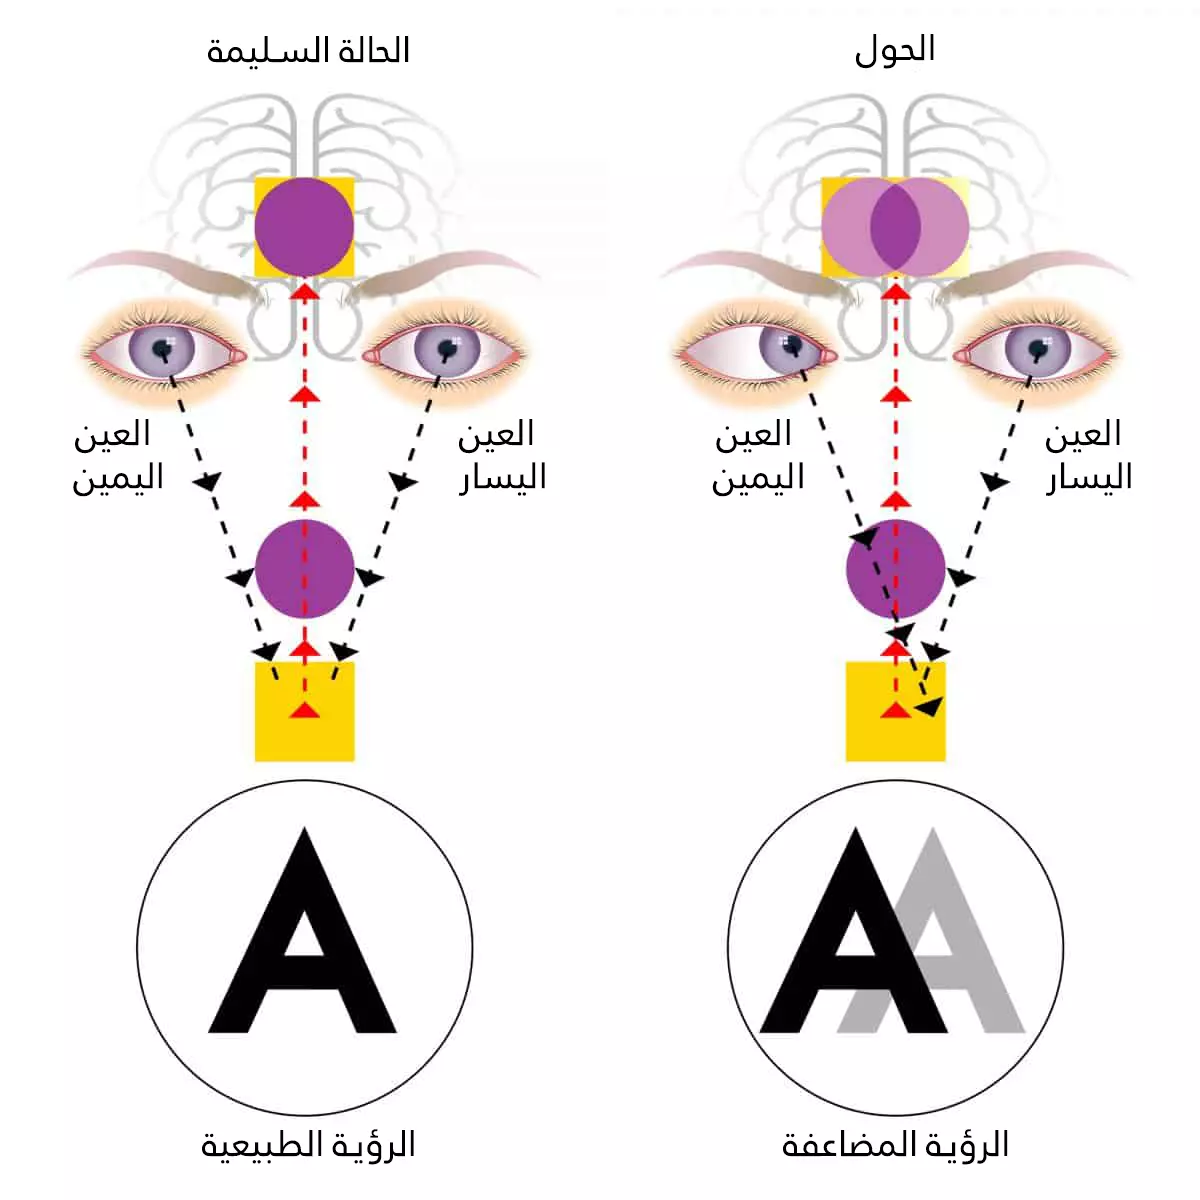 Normal bir makinede gözler aynı noktaya odaklanırken, şaşılıkta gözler iki farklı noktaya odaklanır.